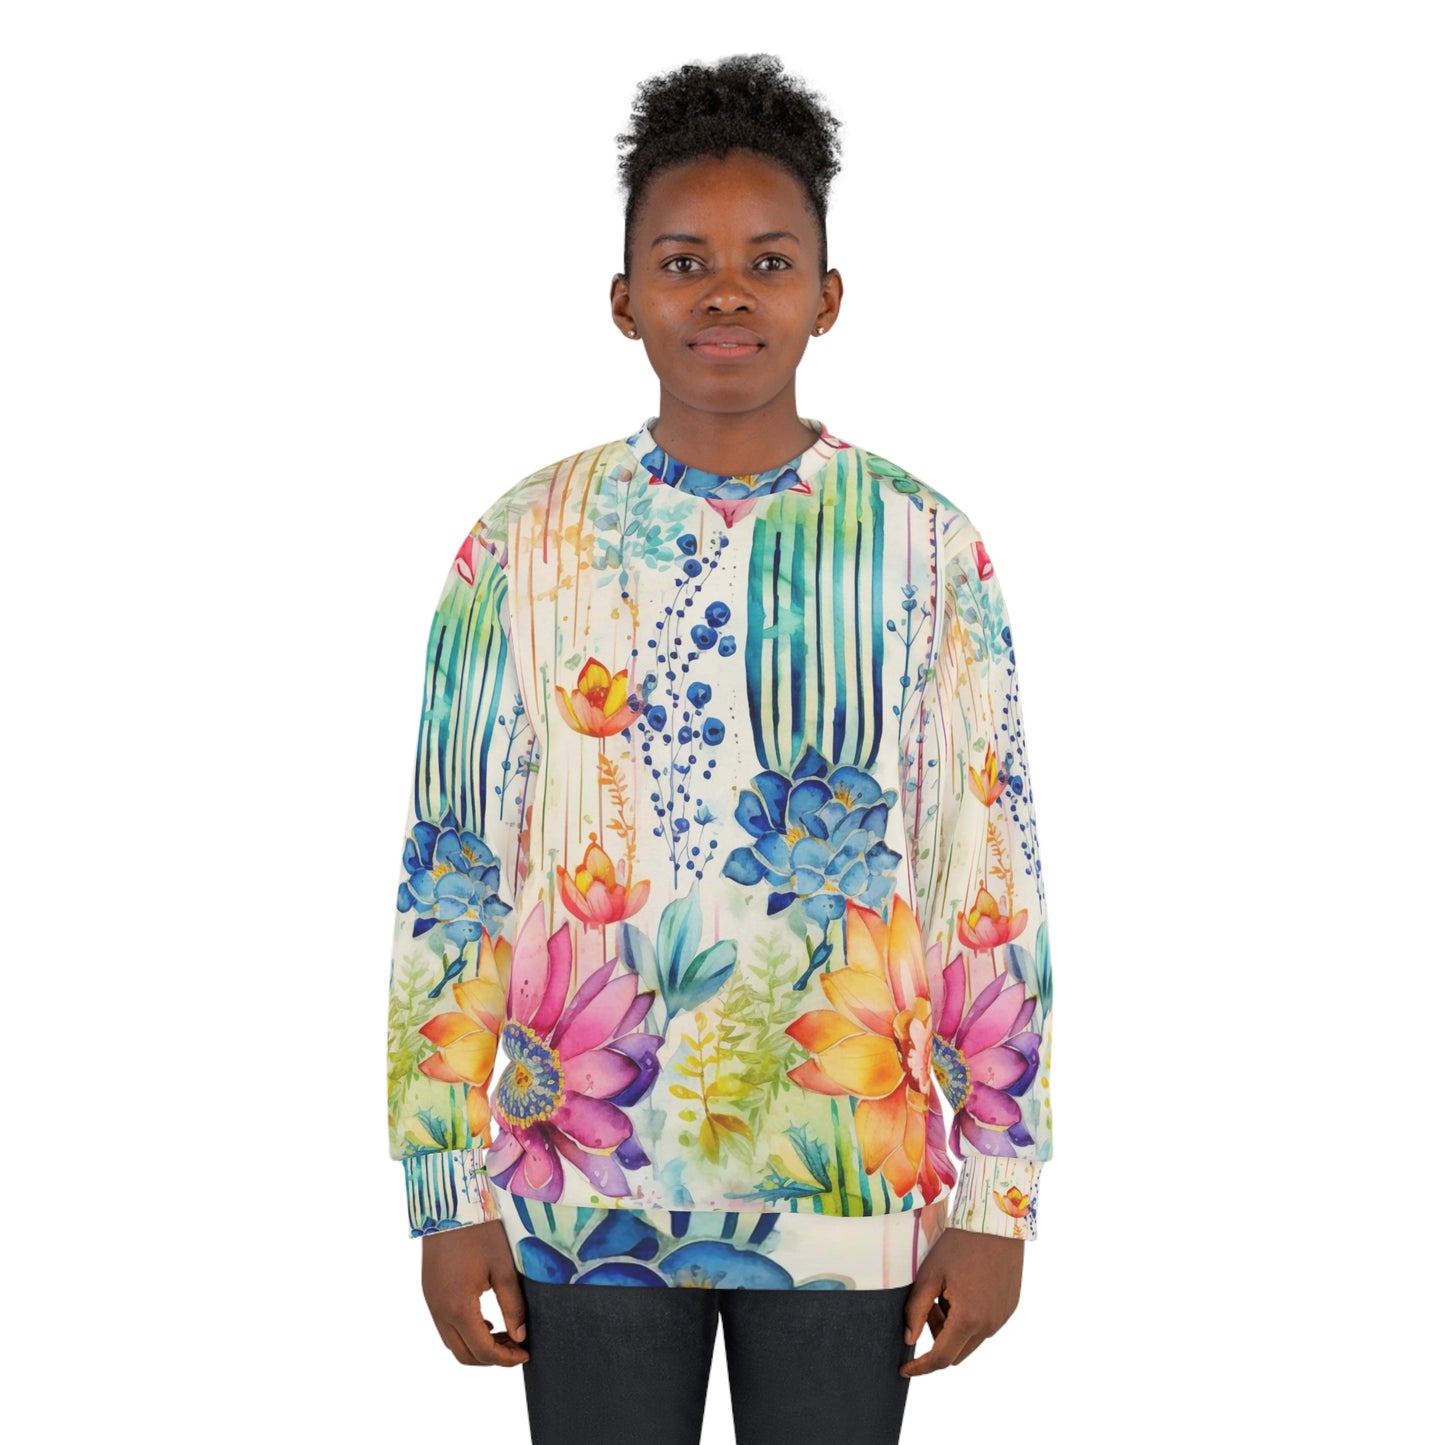 Cactus Design Art, Cactus Style, Cactus Flowers, Unisex Sweatshirt